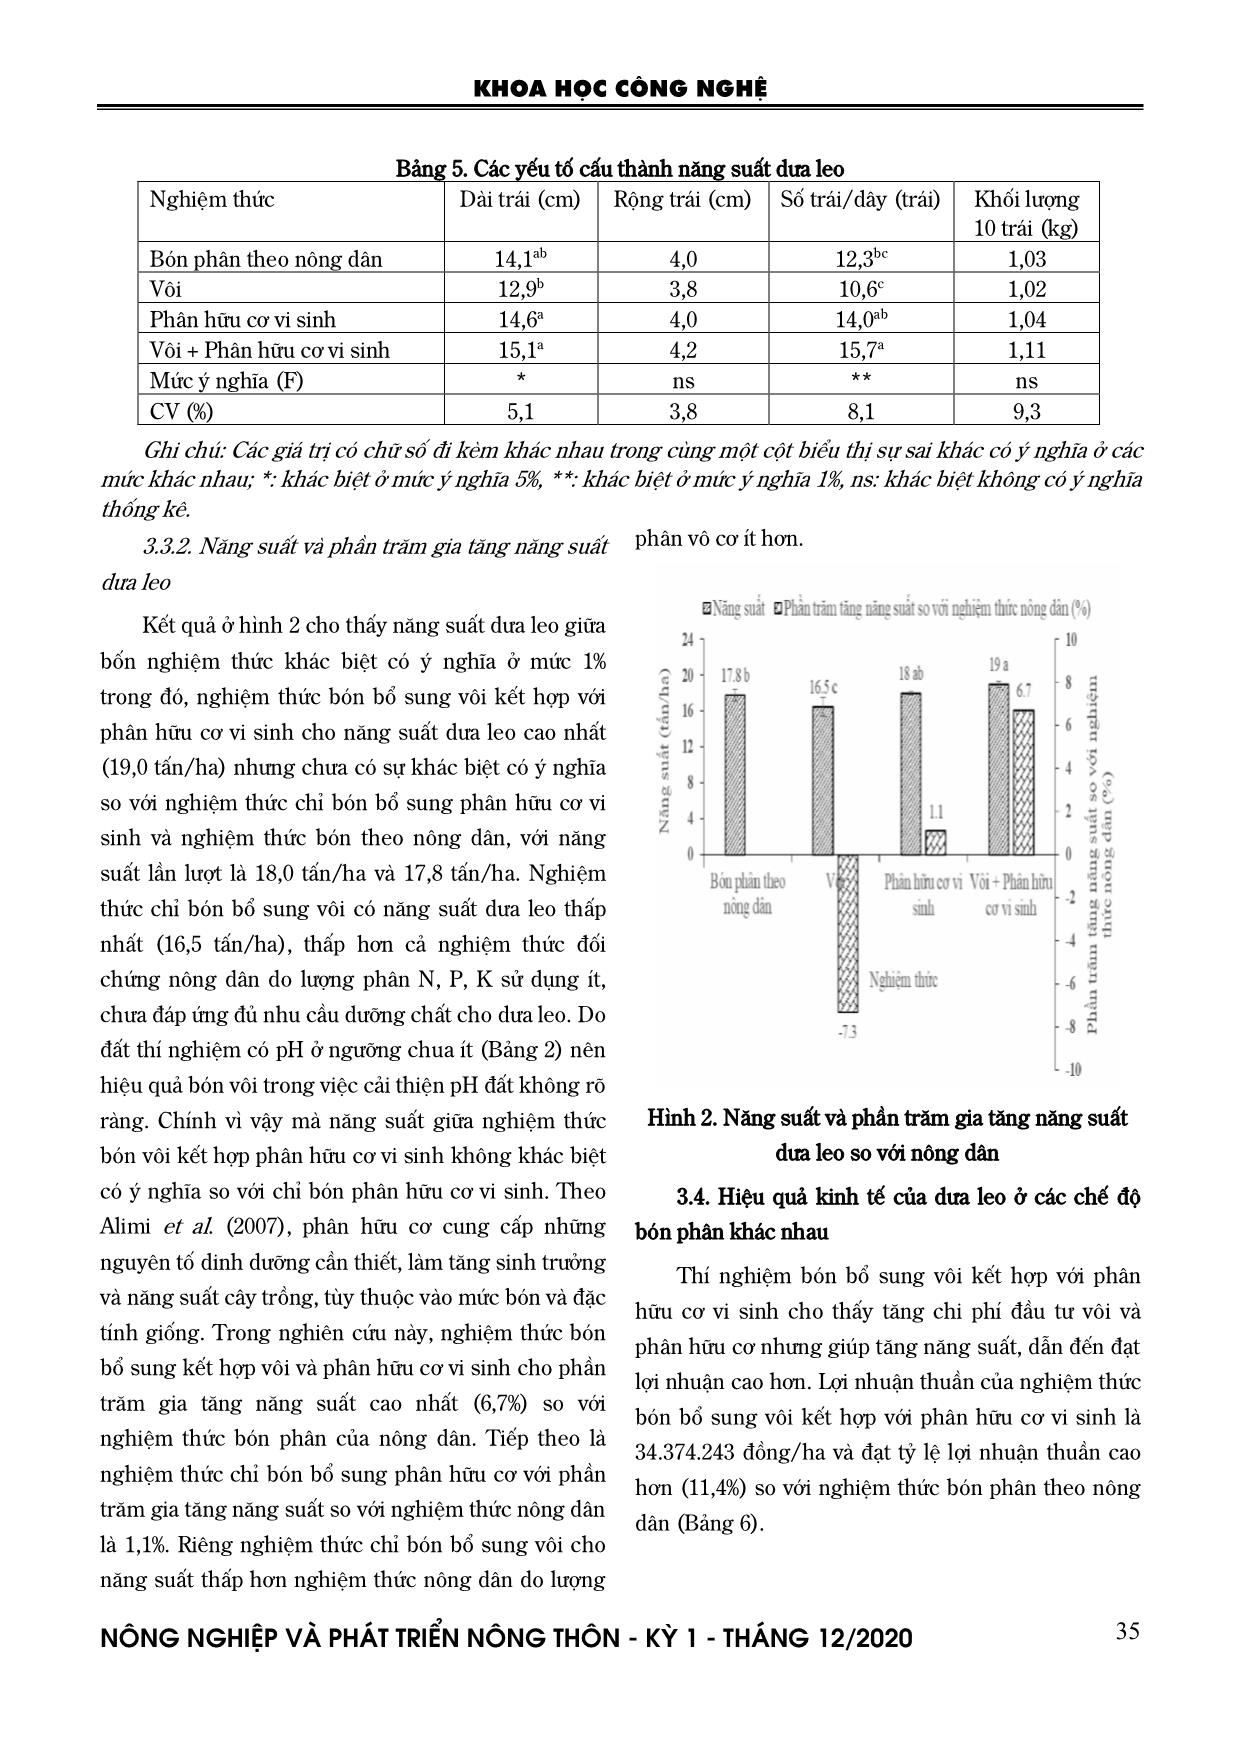 Ảnh hưởng của bổ sung vôi và phân hữu cơ vi sinh đến năng suất và hiệu quả kinh tế của trồng dưa leo (Cucumis sativus L.) trên đất phèn tại huyện Vị Thủy, tỉnh Hậu Giang trang 5